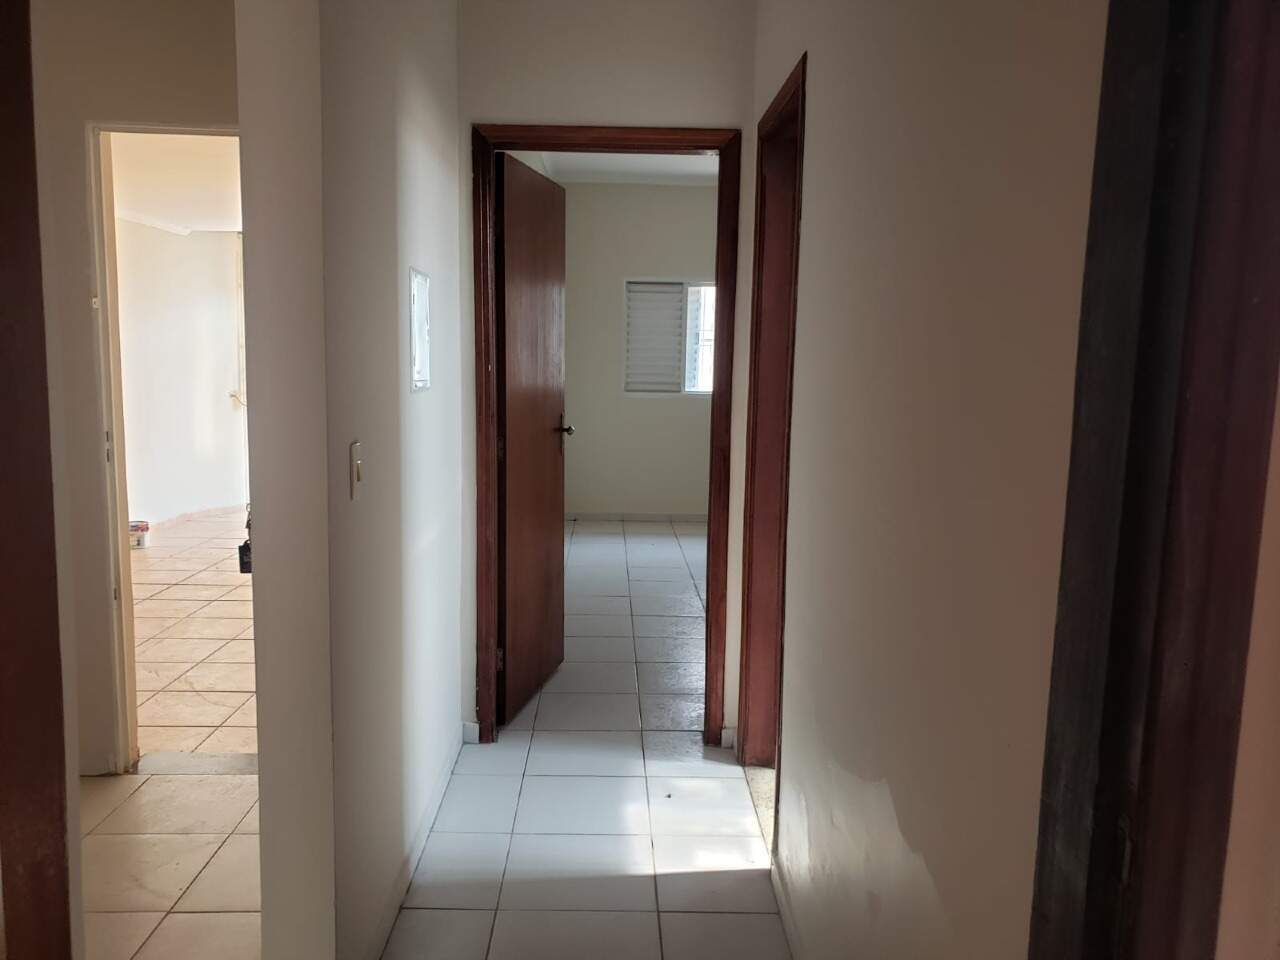 Casa à venda, 2 quartos, sendo 1 suíte, 1 vaga, no bairro São Dimas em Piracicaba - SP